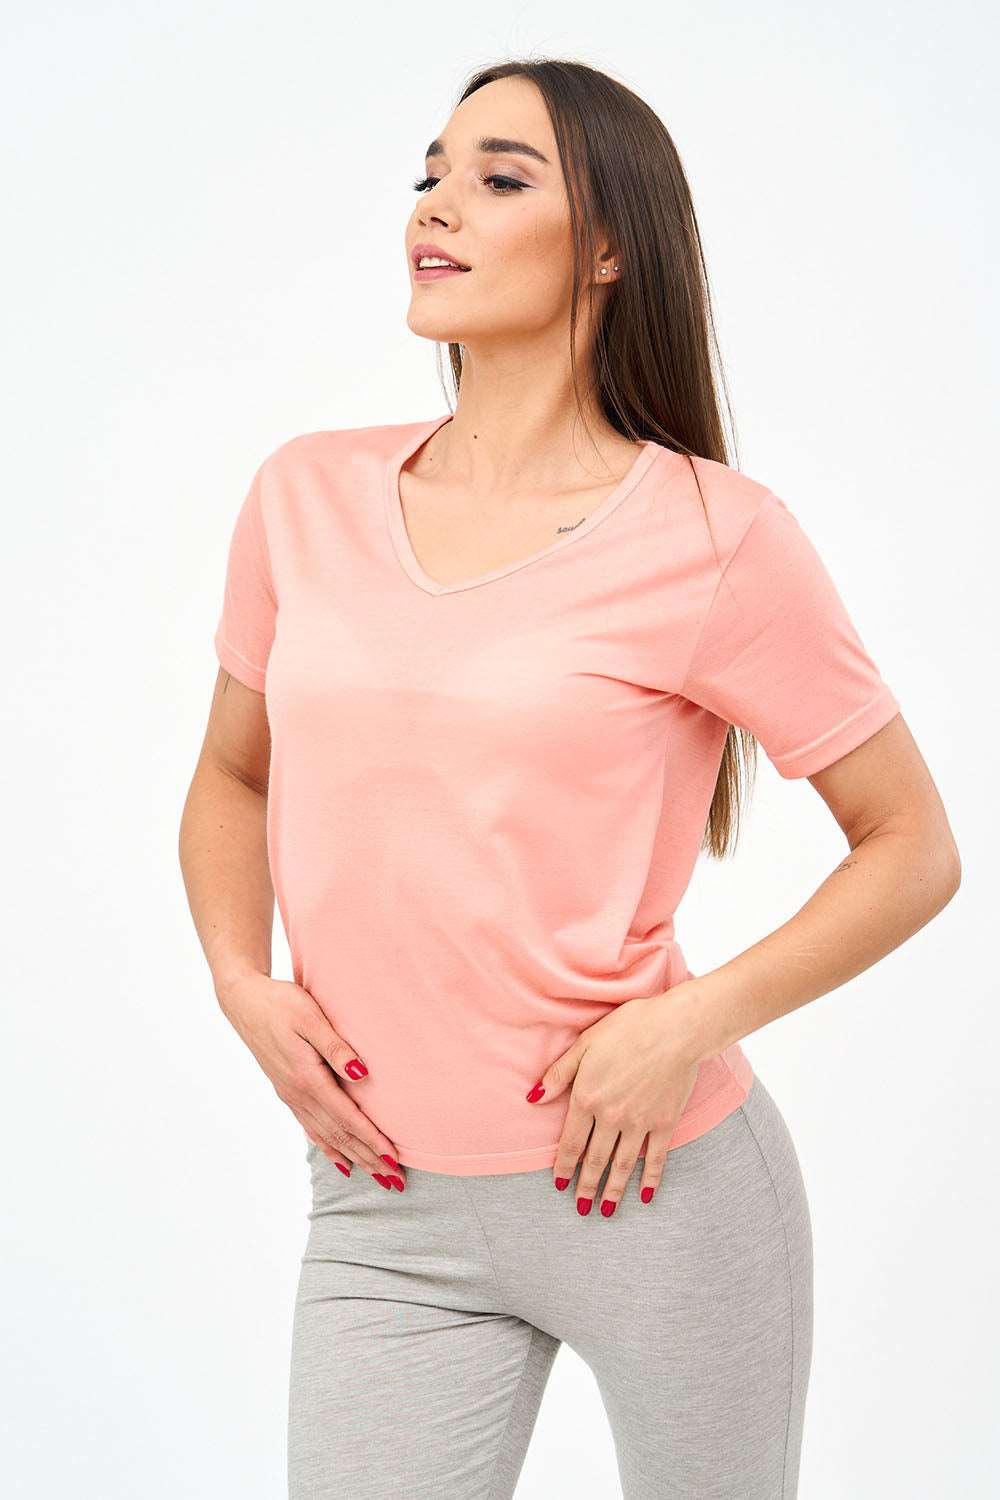 Short-Sleeved V Neck Women's T Shirt in Pink!